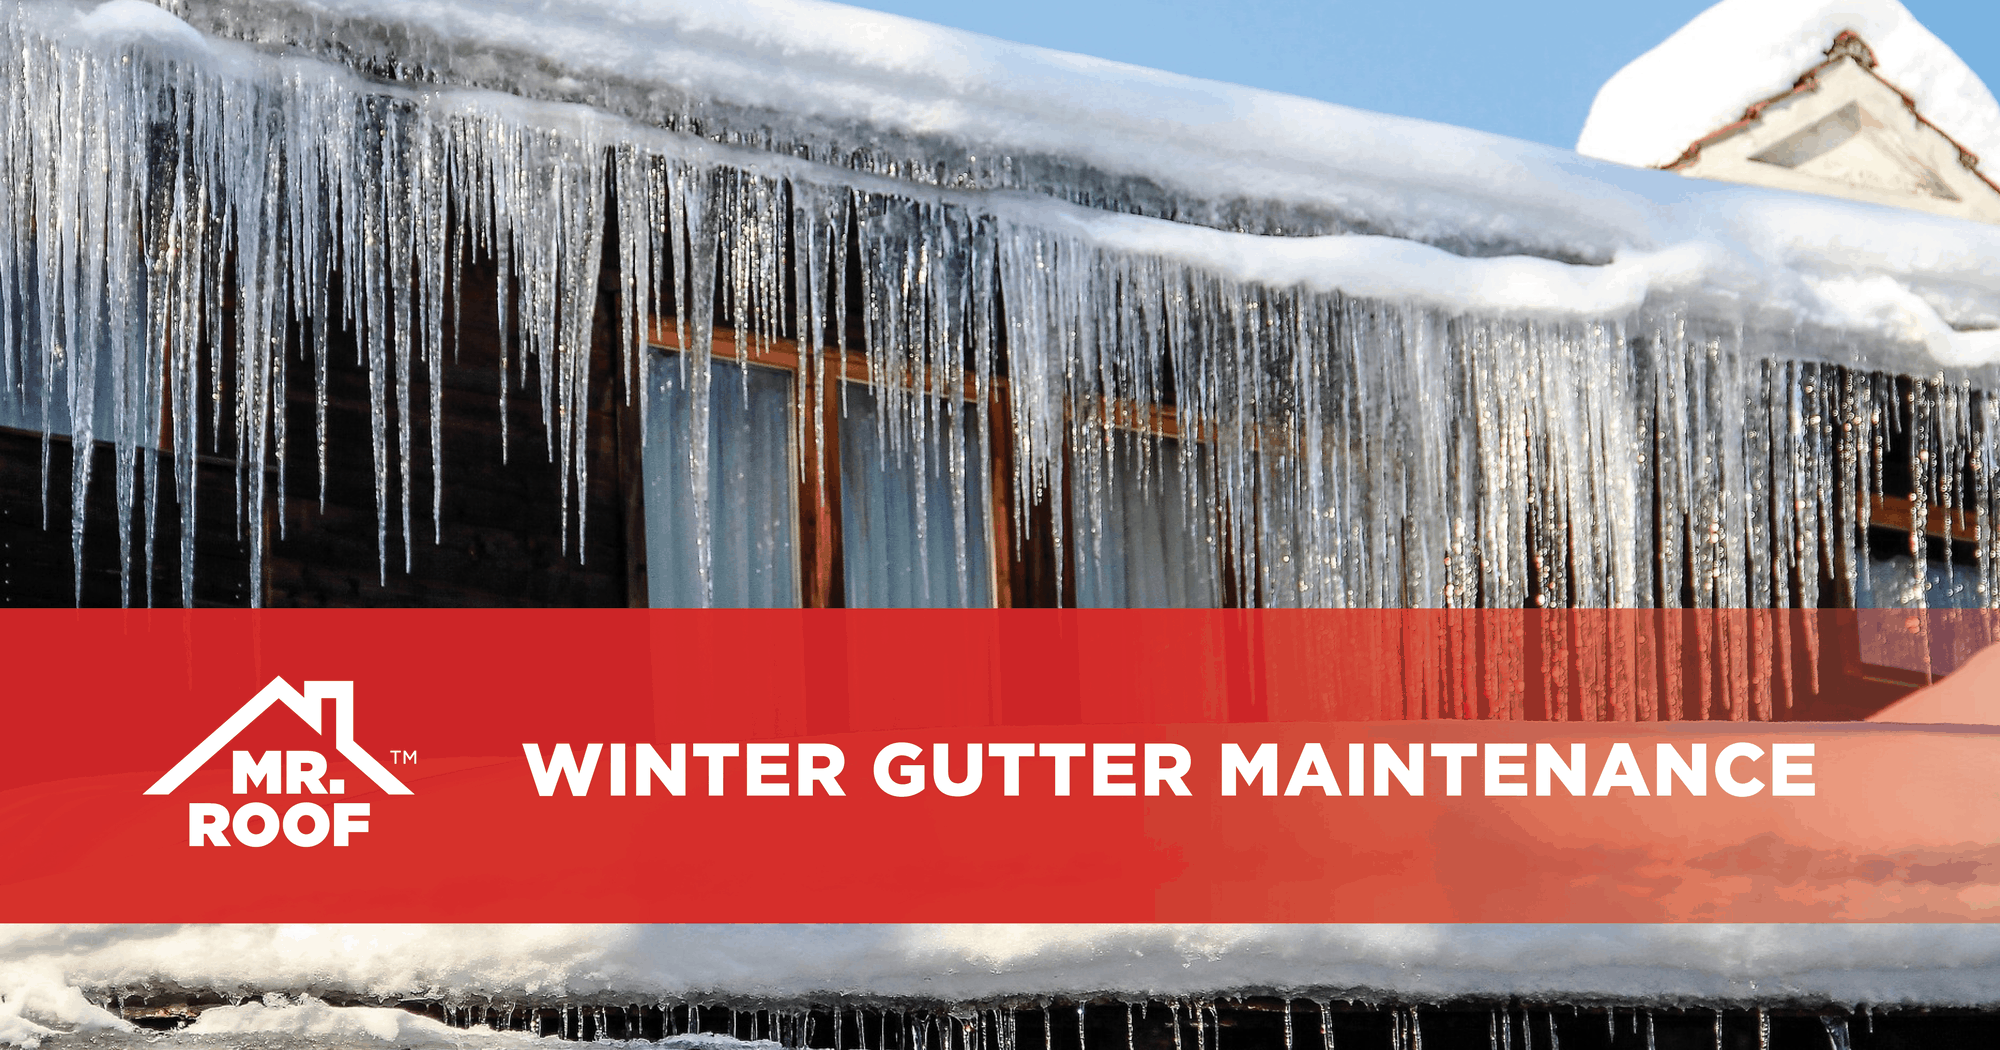 Winter gutter maintenance